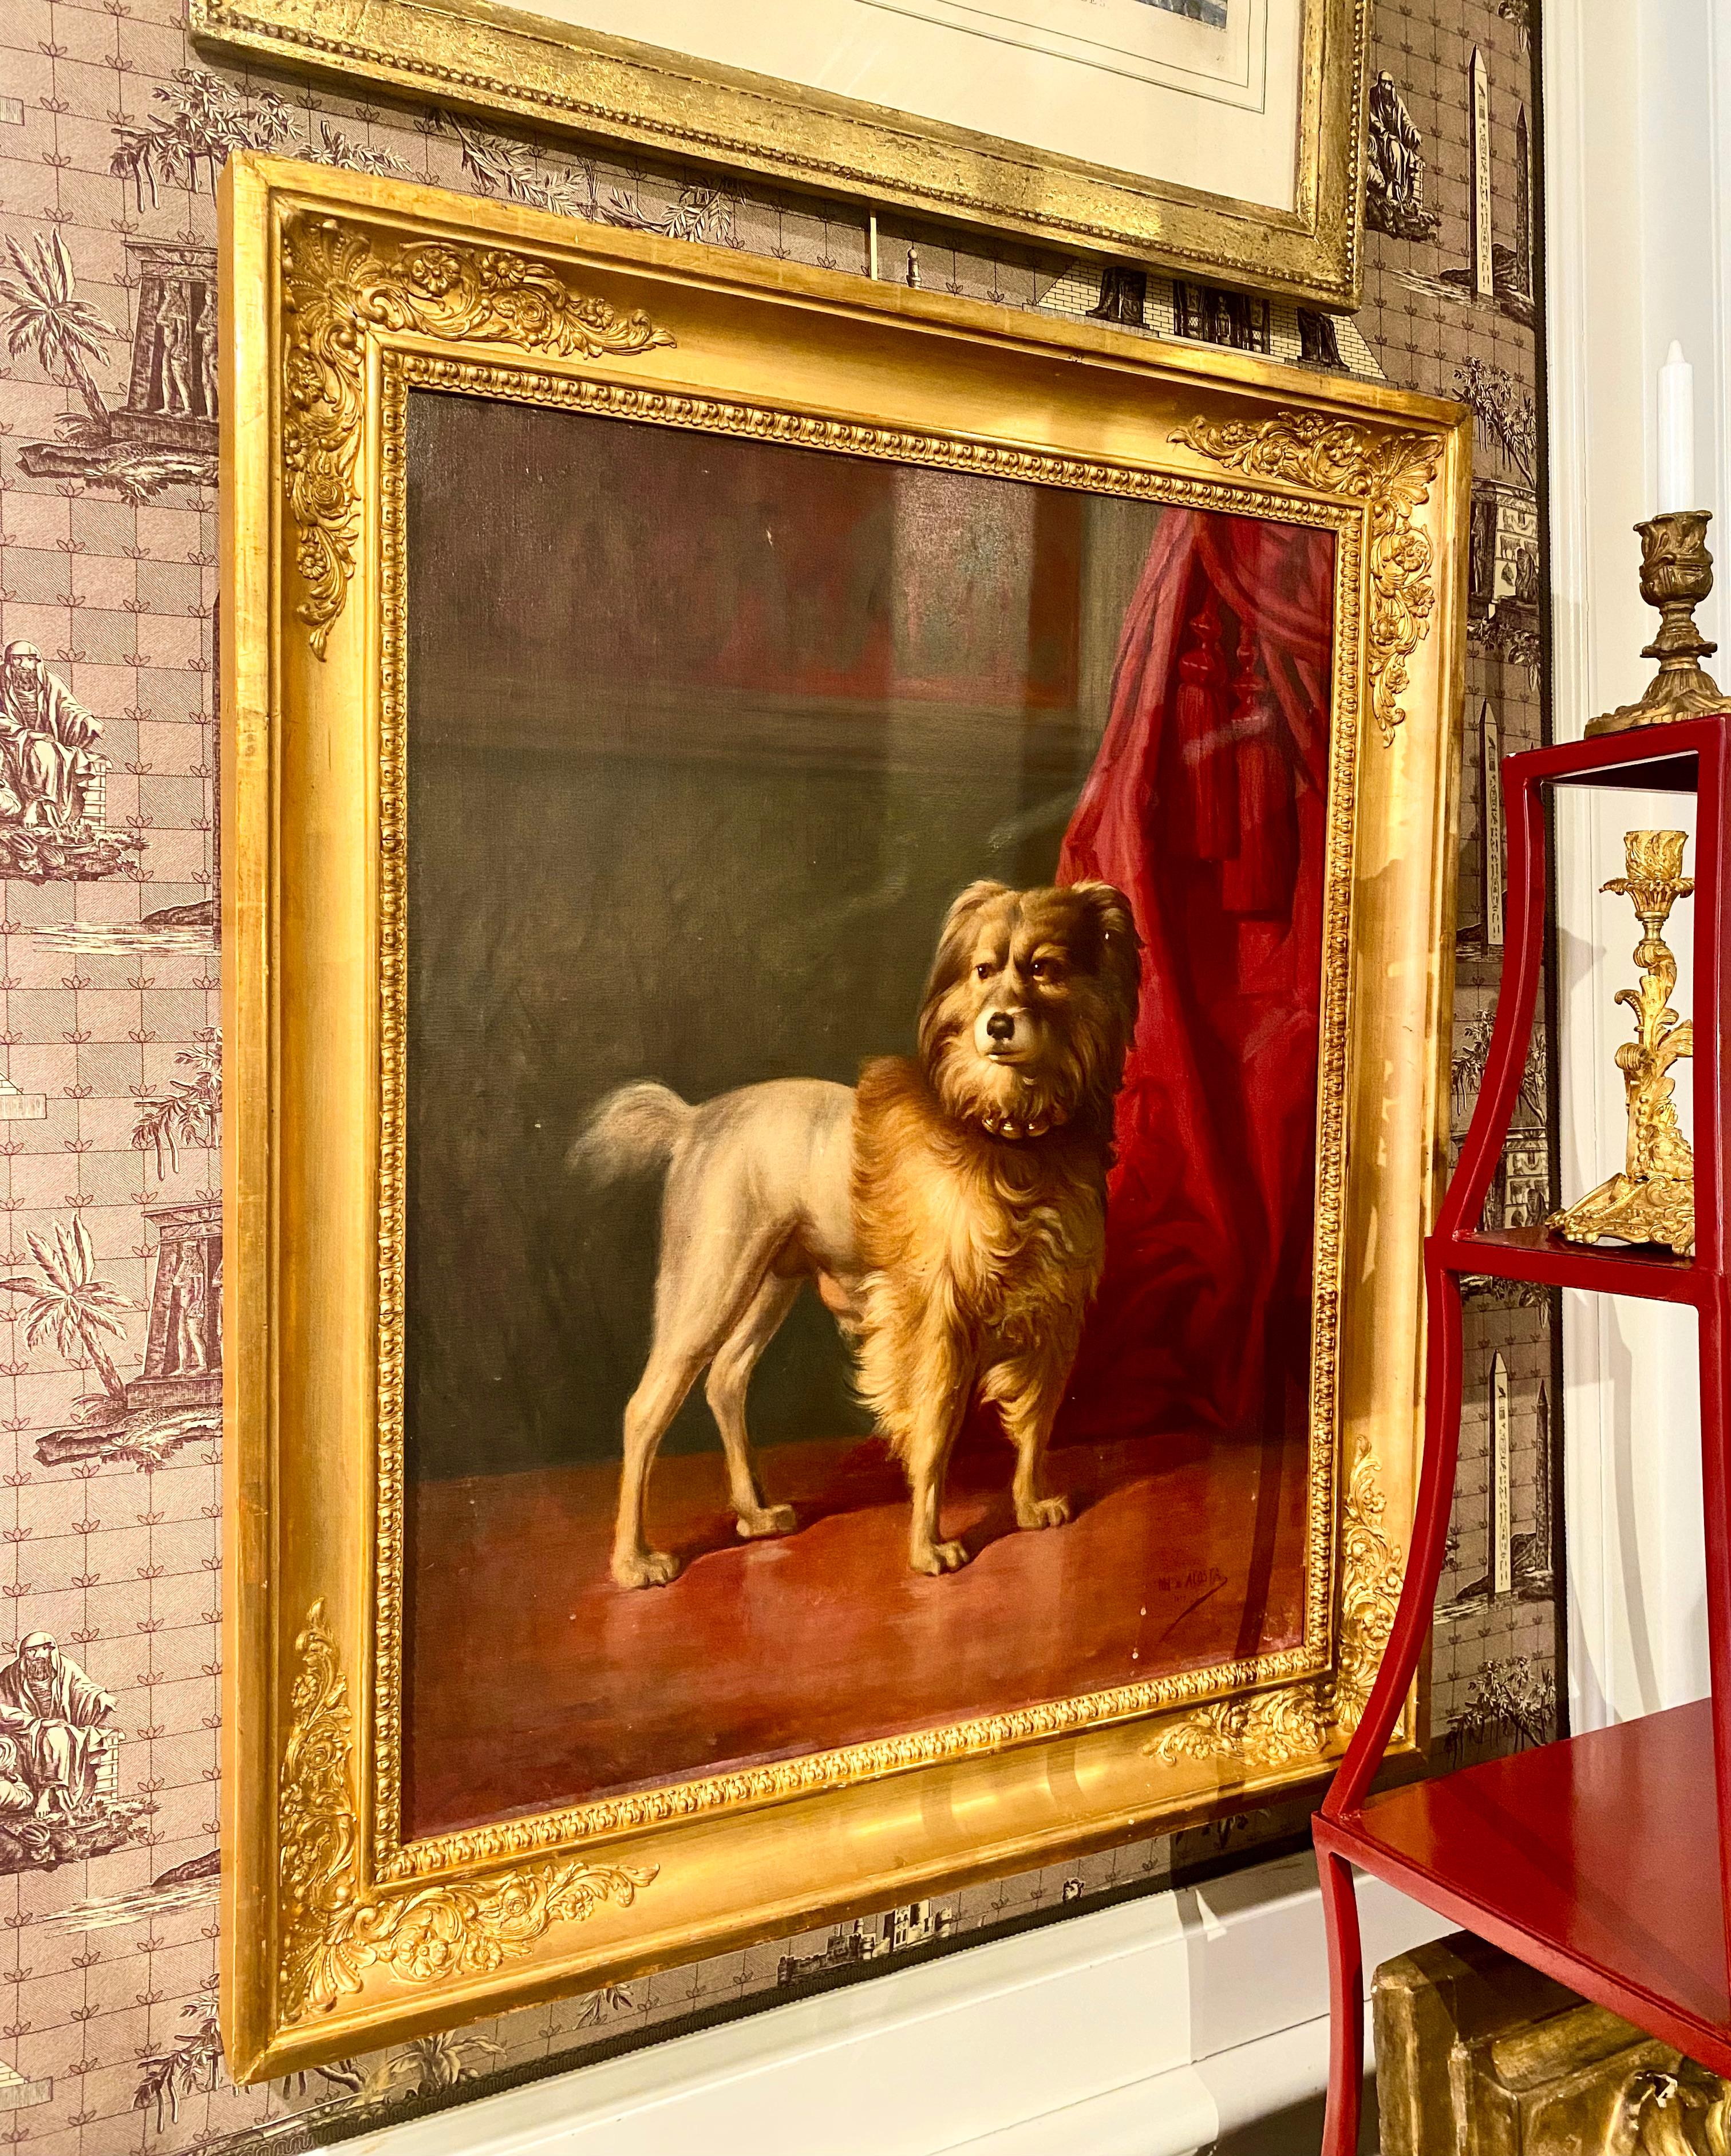 Porträt von Friel, Hund der Herzöge von Osuna, von Marcos Hiràldez Di Acosta, 1879

Großartiges, signiertes Gemälde von Marcos Hiráldez De Acosta (1830-1896), einem Schützling der Familie des Herzogs von Osuna, aus Madrid. 

Der treue Hund des